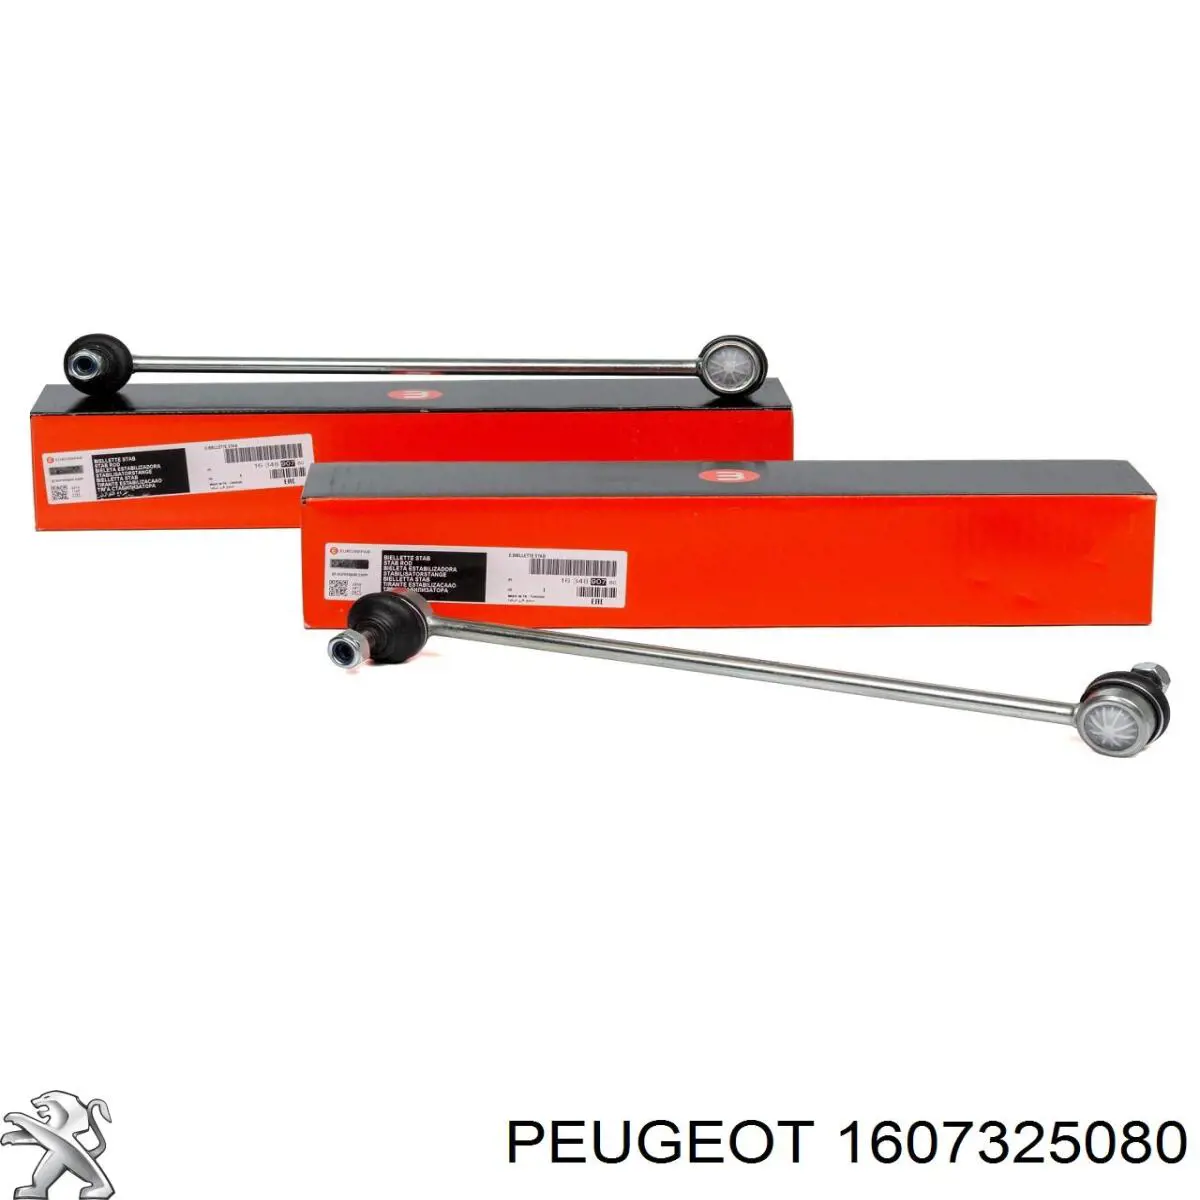 1607325080 Peugeot/Citroen polea de cigüeñal